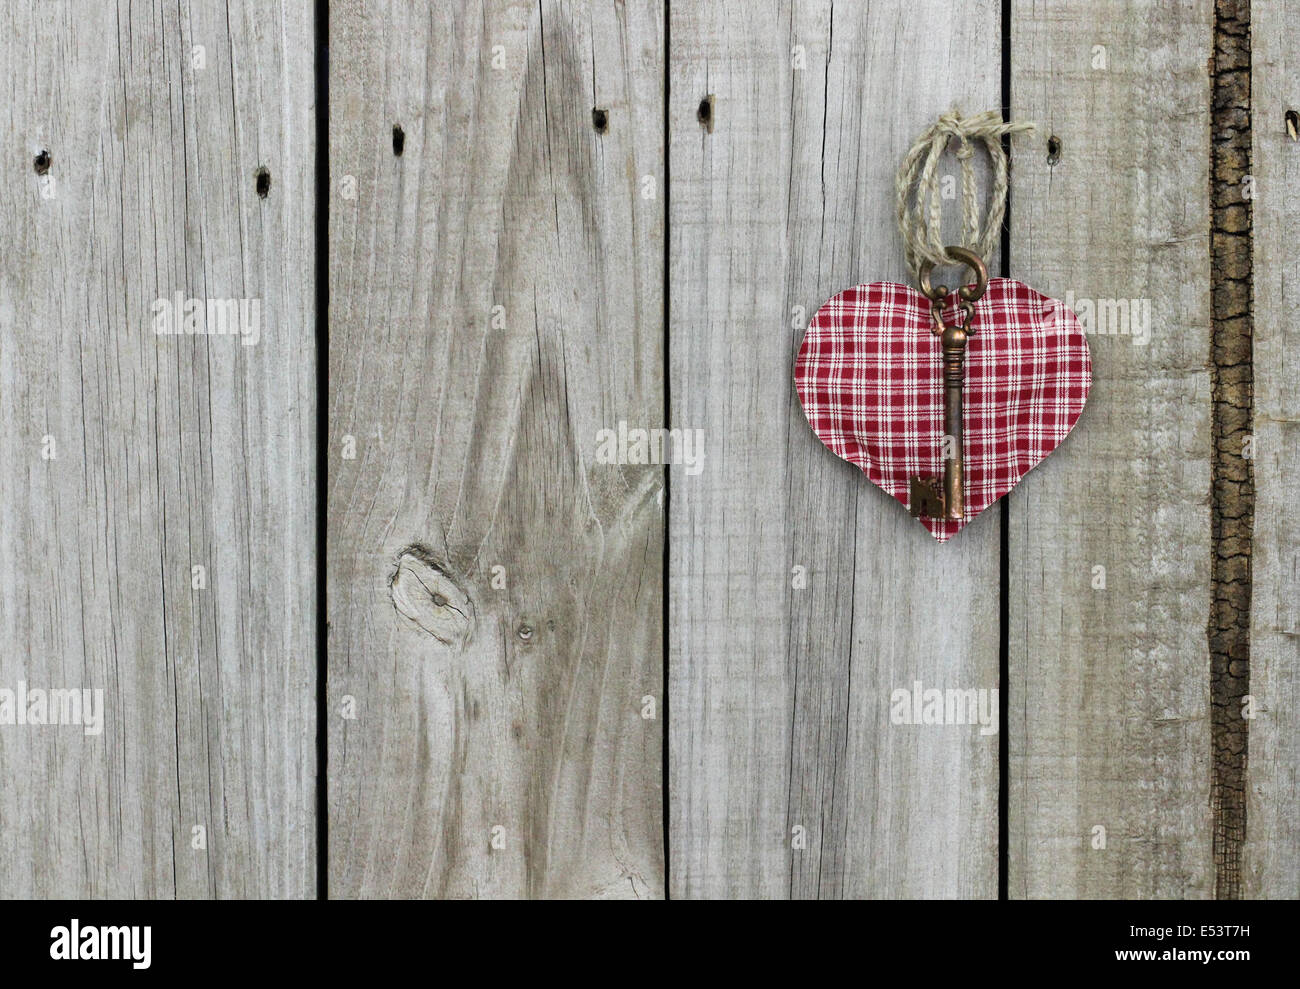 La chiave per il mio cuore; rosso a scacchi (plaid) Cuore con ottone chiave scheletro appeso su rustiche porta in legno Foto Stock